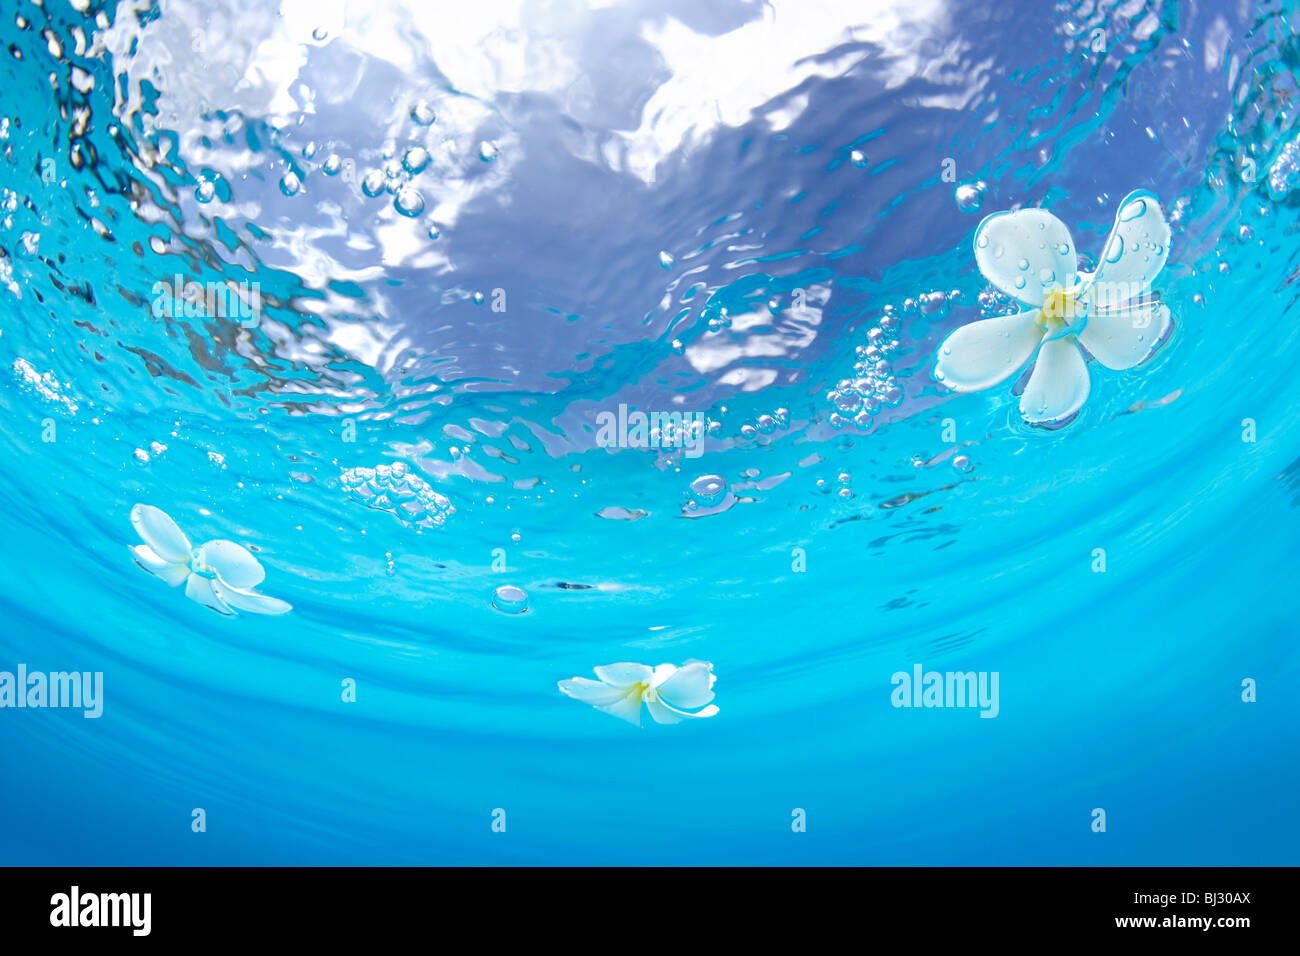 Plumerias schwimmt auf dem Wasser Stockfoto